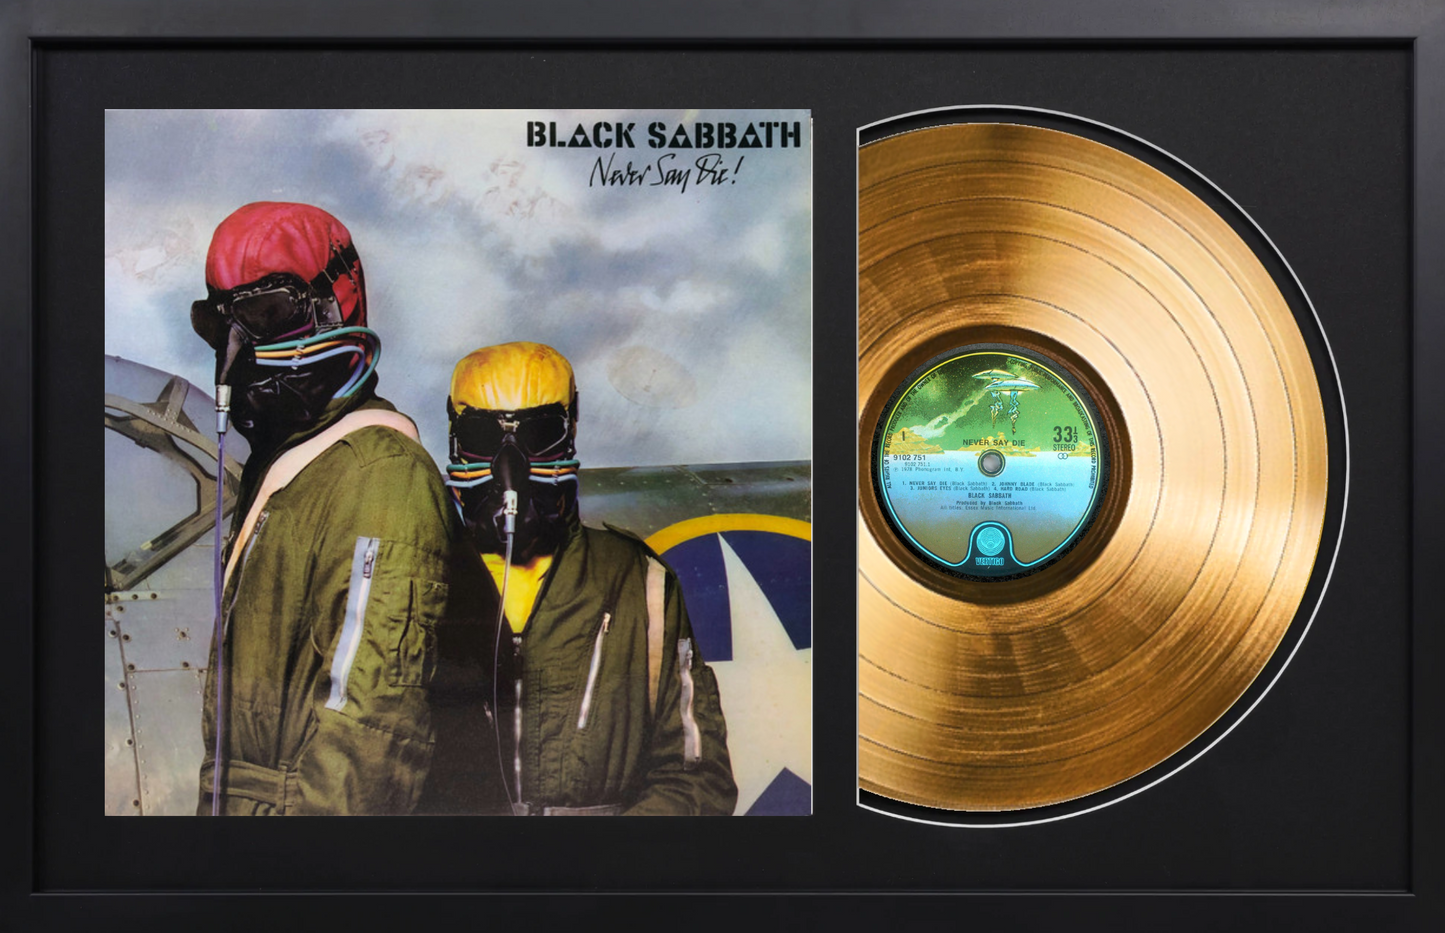 Black Sabbath - Never Say Die! - 14K Gold Plated Vinyl